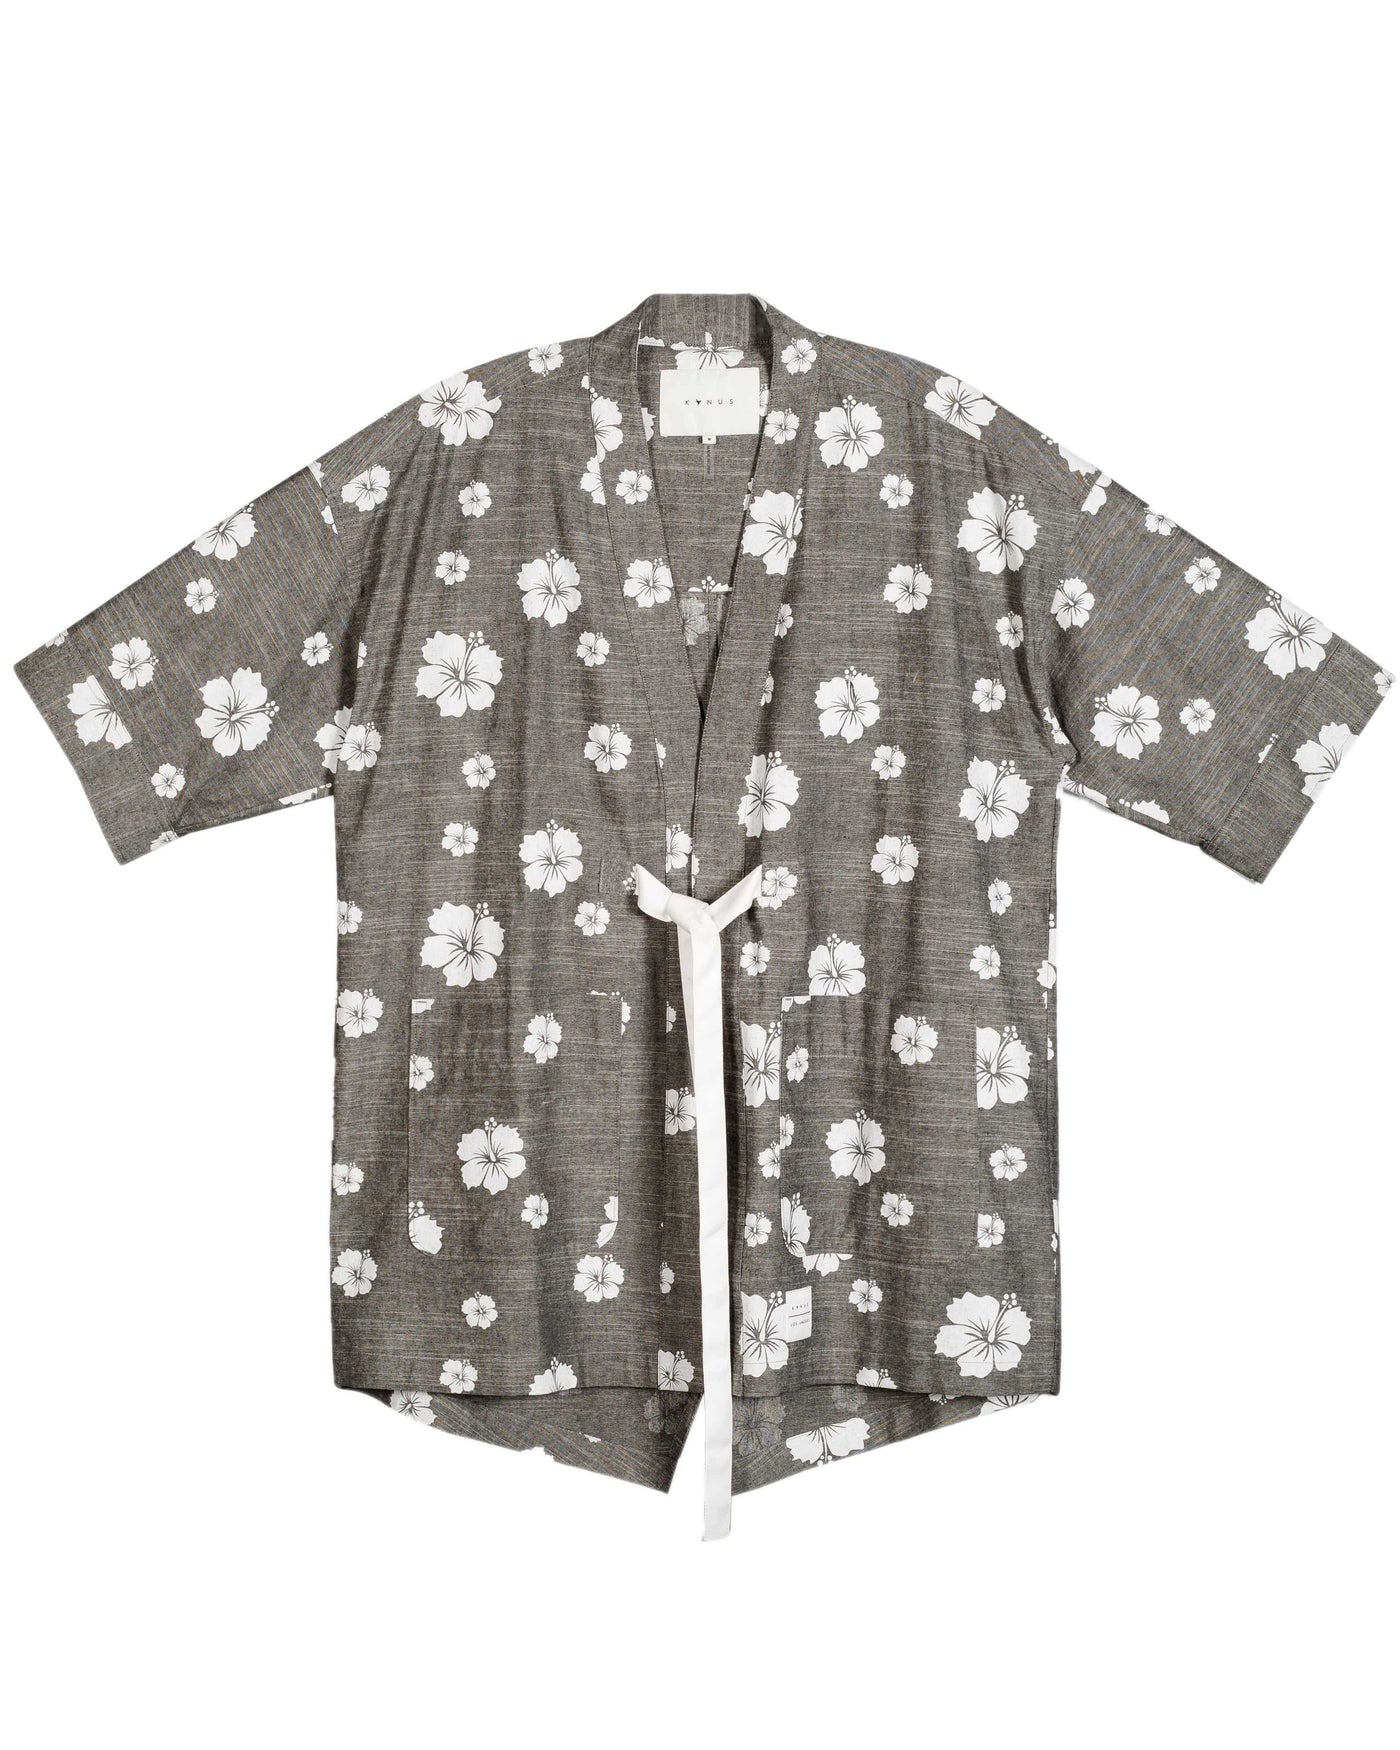 Konus Men's Kimono Shirt w/ Floral Print in Gray by Shop at Konus